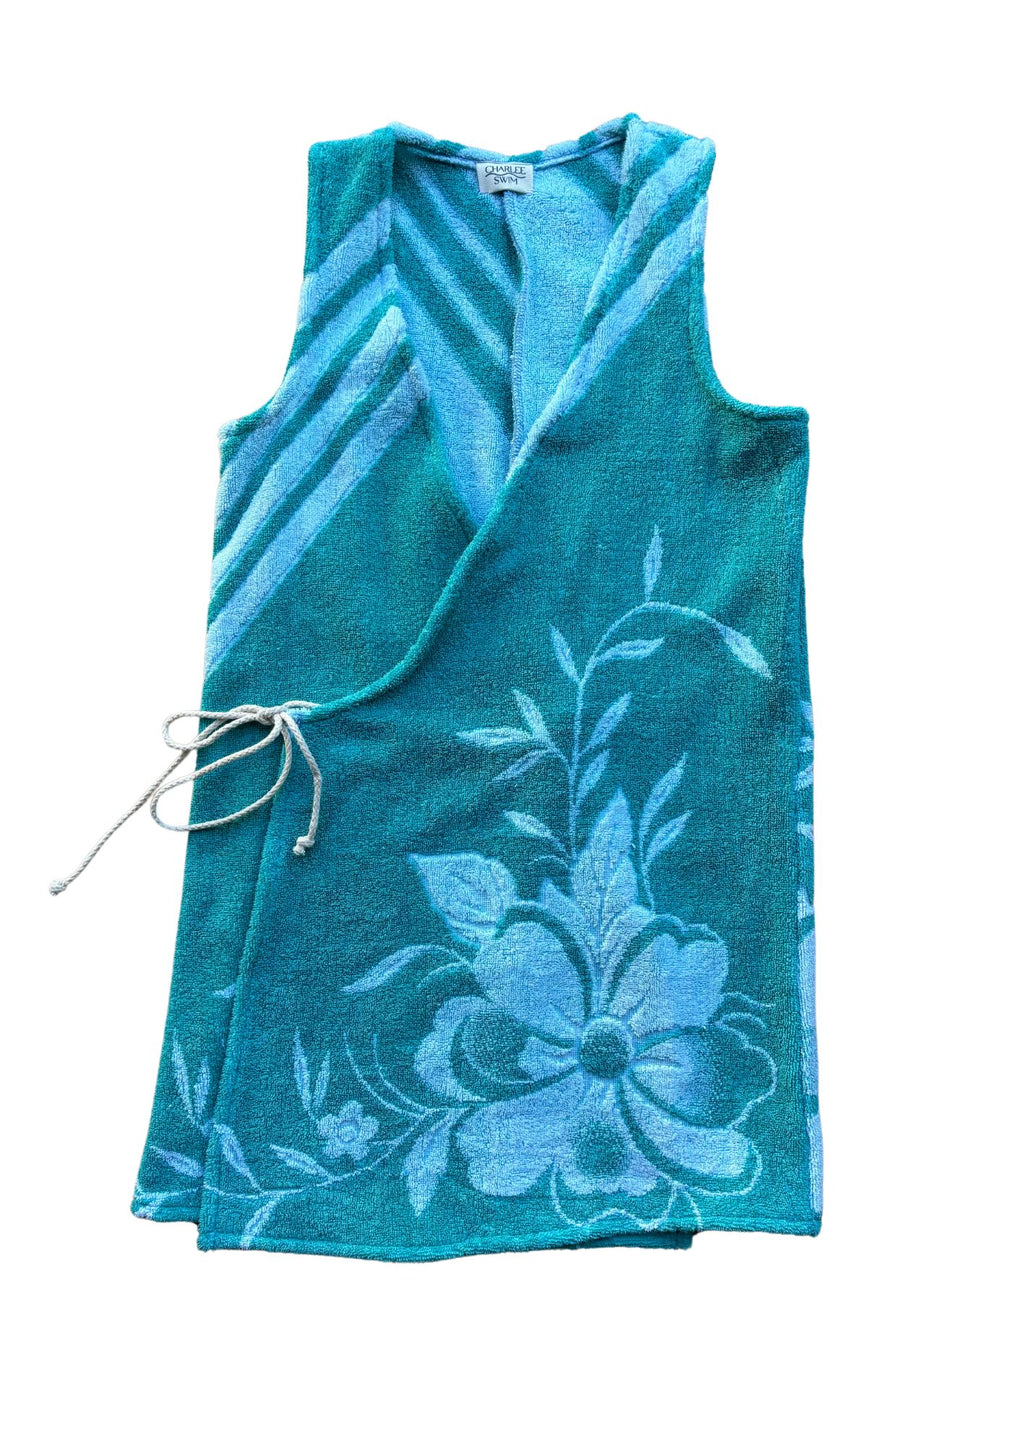 Towel Wrap Dress - Teal